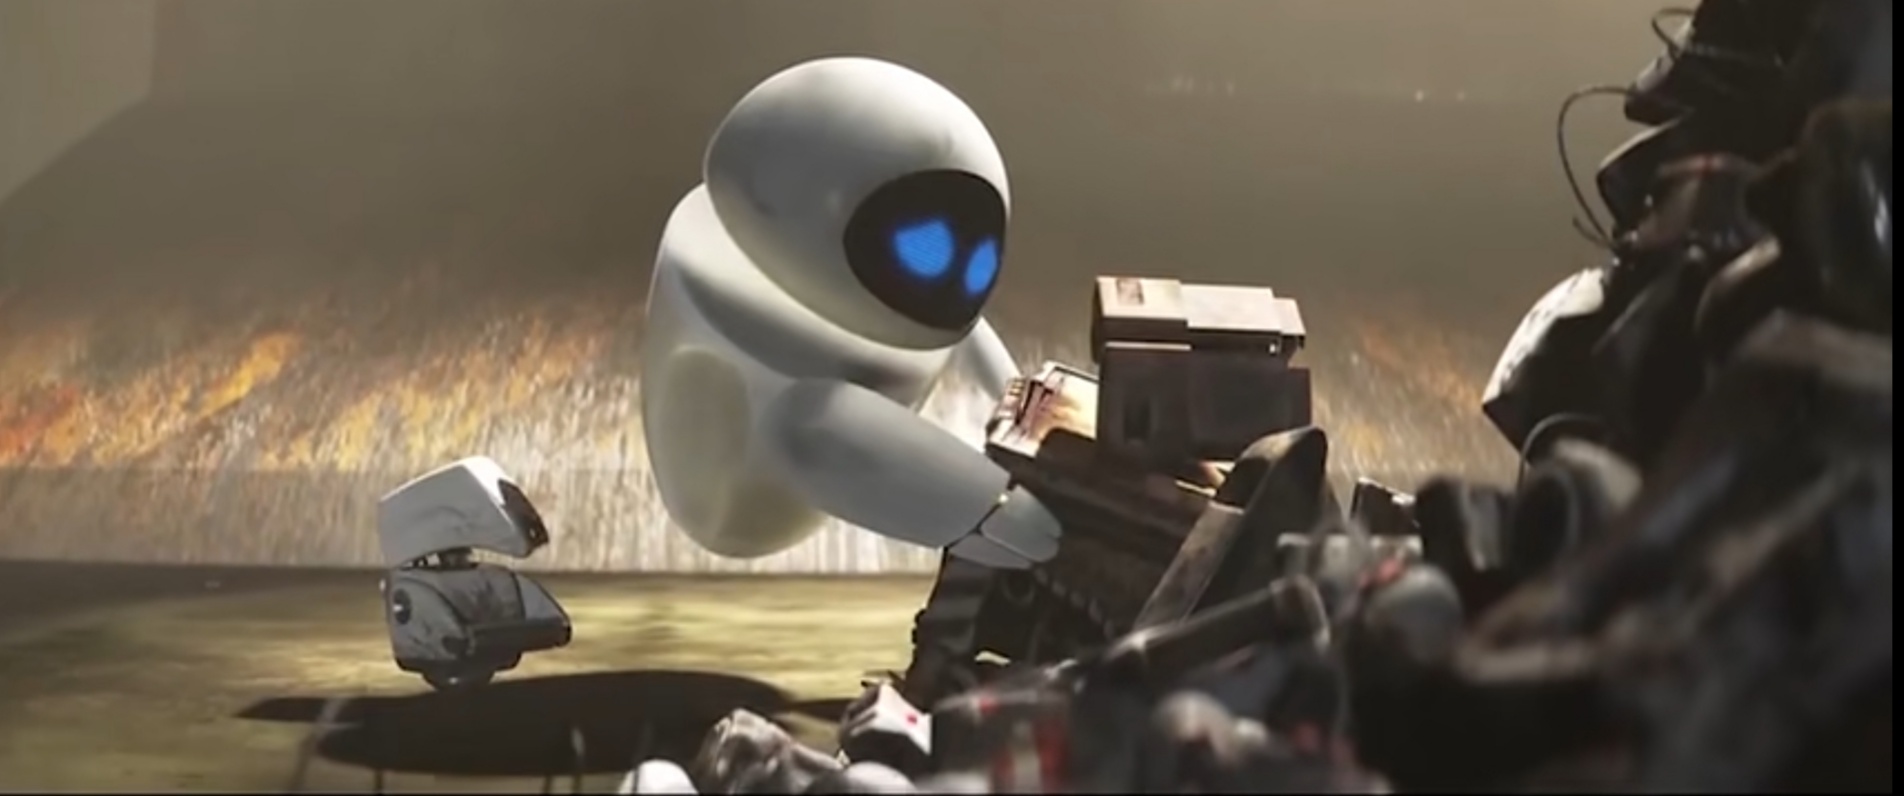 科幻动画电影《机器人总动员》